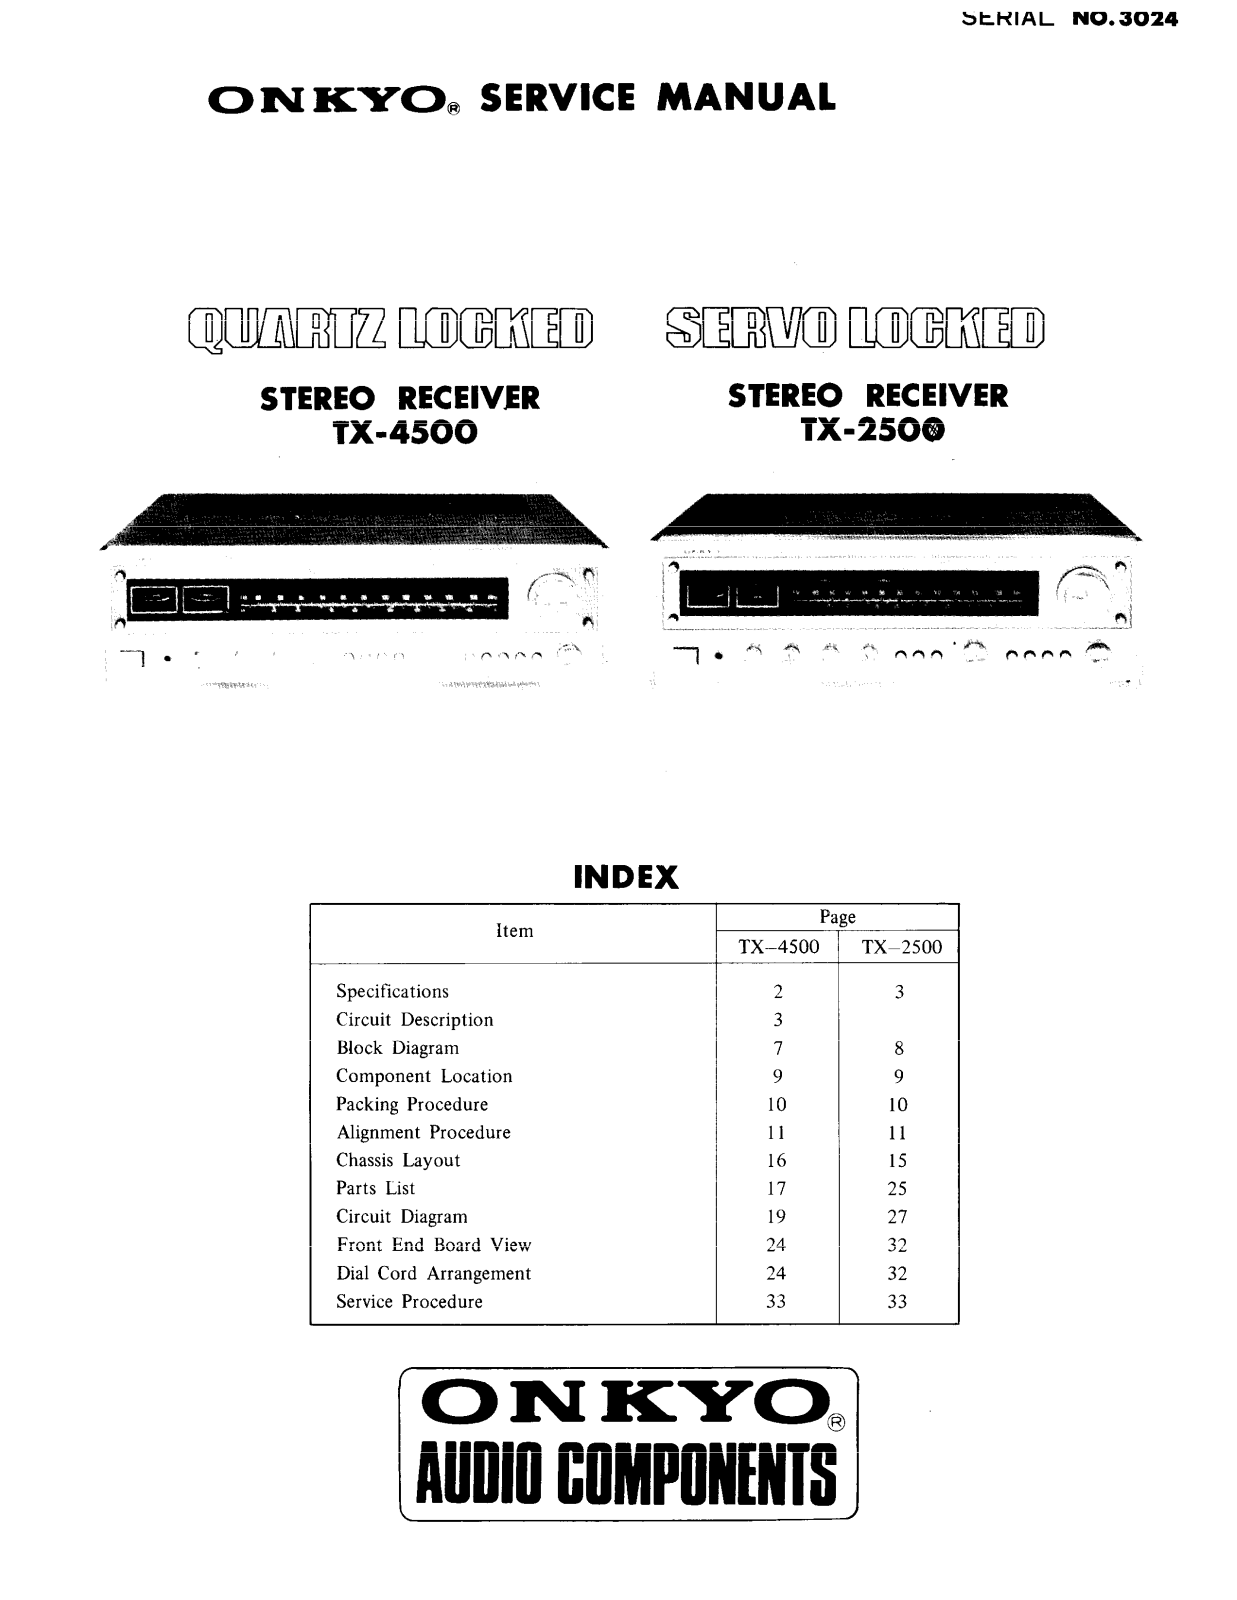 Onkyo TX-2500 Service manual